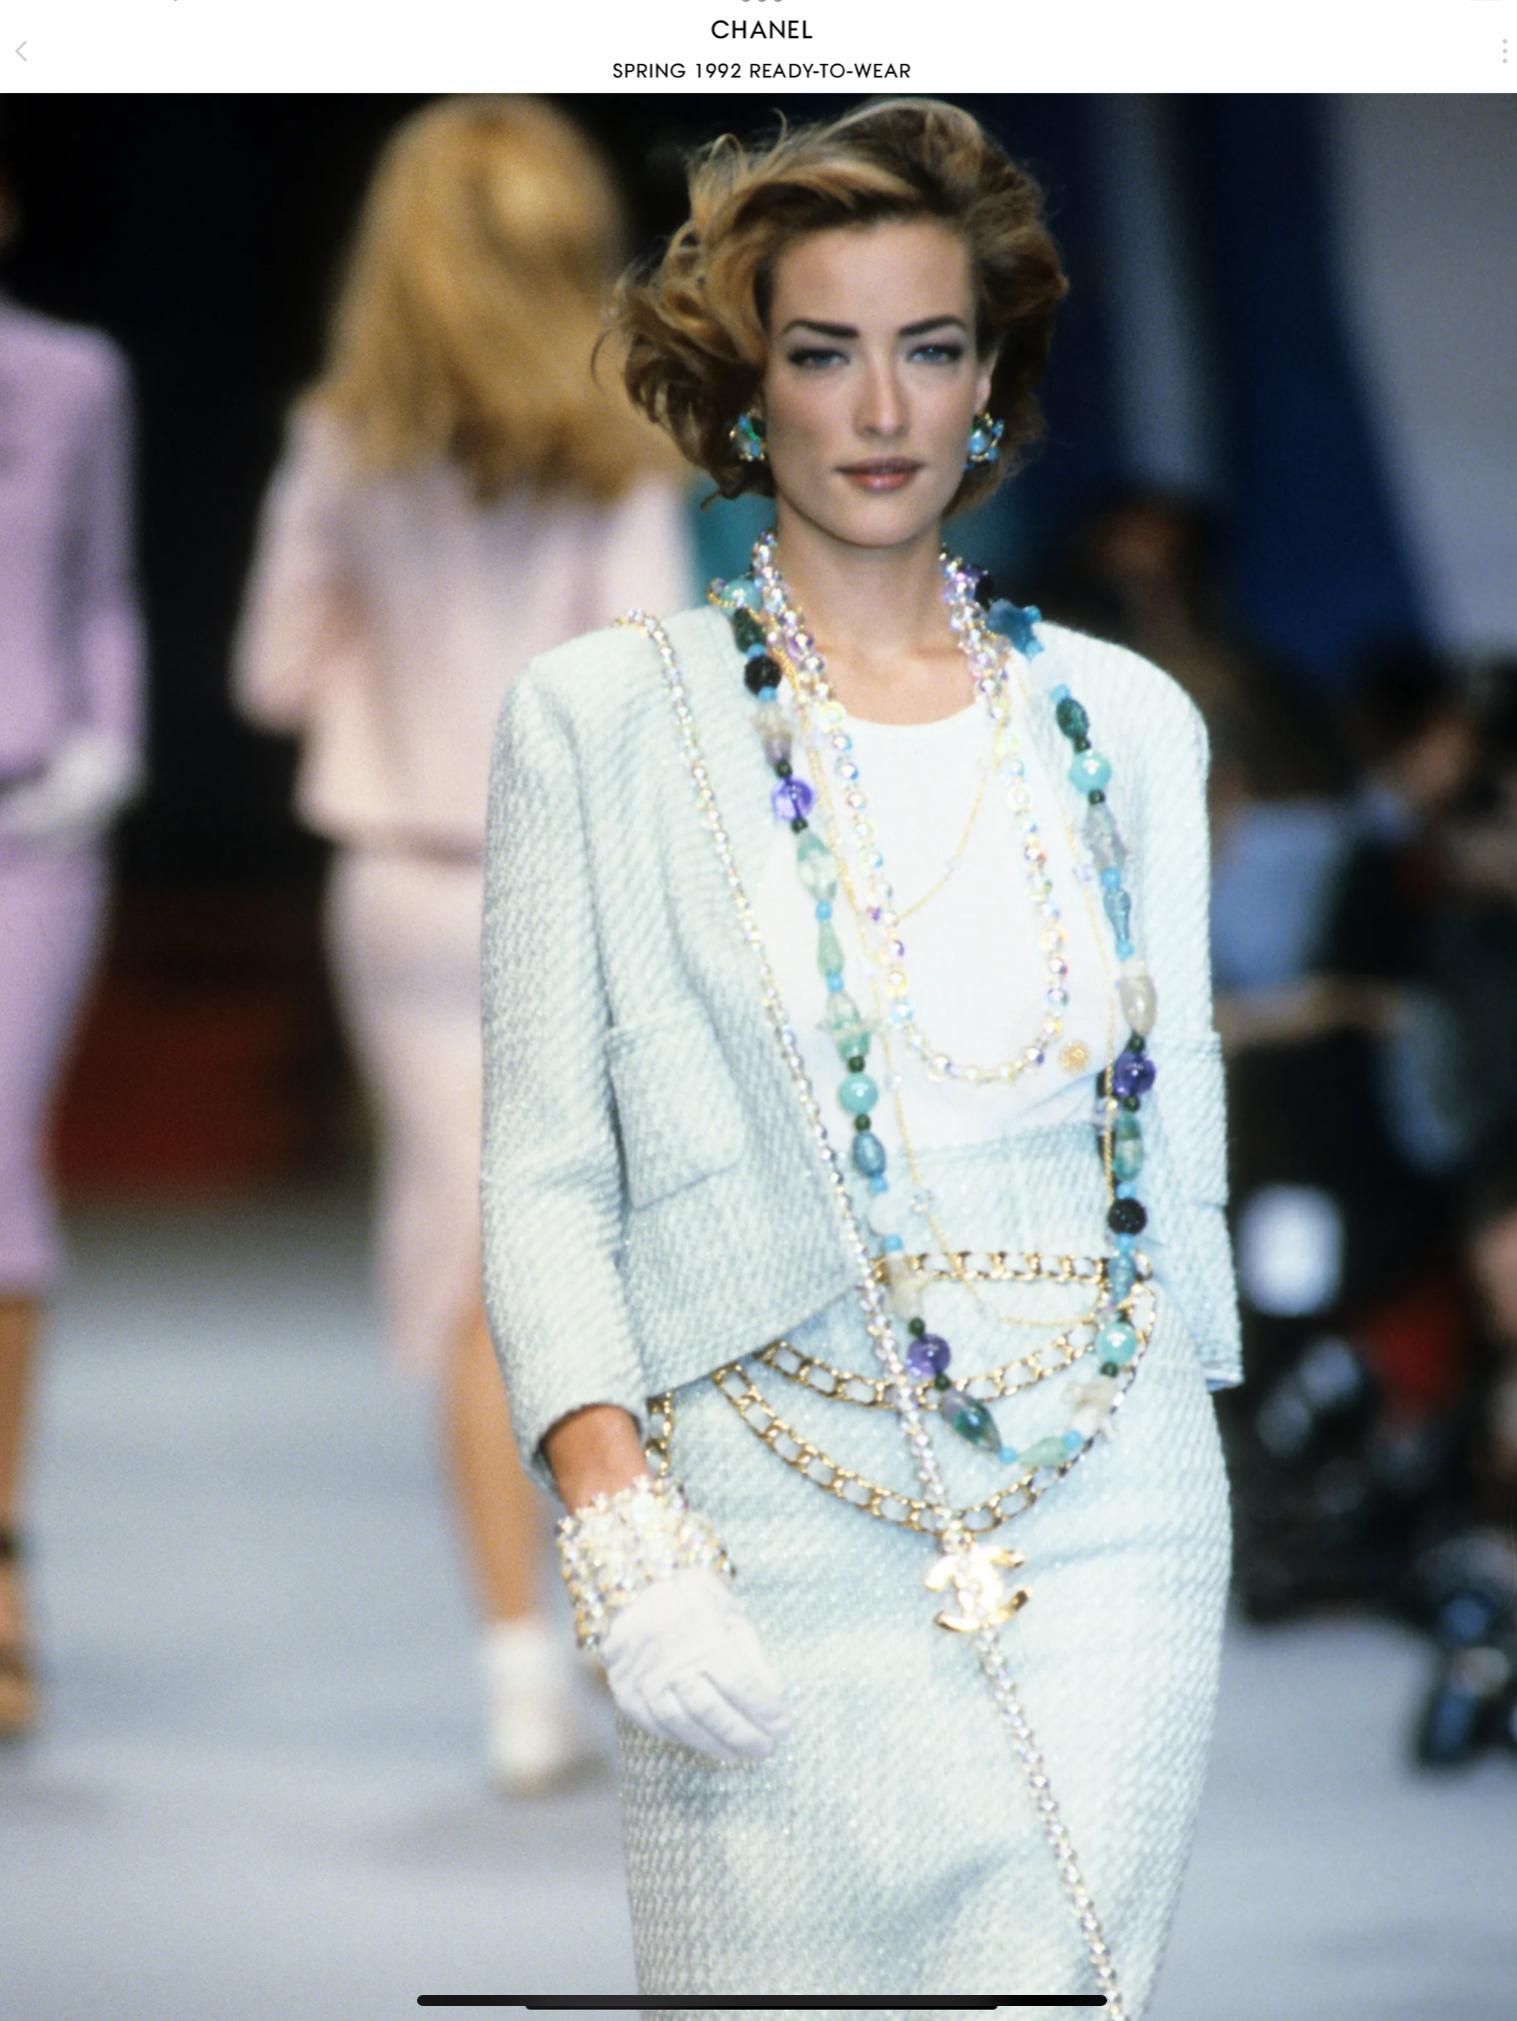 Chanel Boutique Runway Spring 1992 Ivory & Pale Turquoise Wool/Silk Woven Tweed Jacket - Größe 44 auf dem Etikett jedoch dieses Element wurde geändert und entspricht mehr zu einer Größe 4 US. Diese erstaunliche Chanel Runway Jacke war Look 5 in der